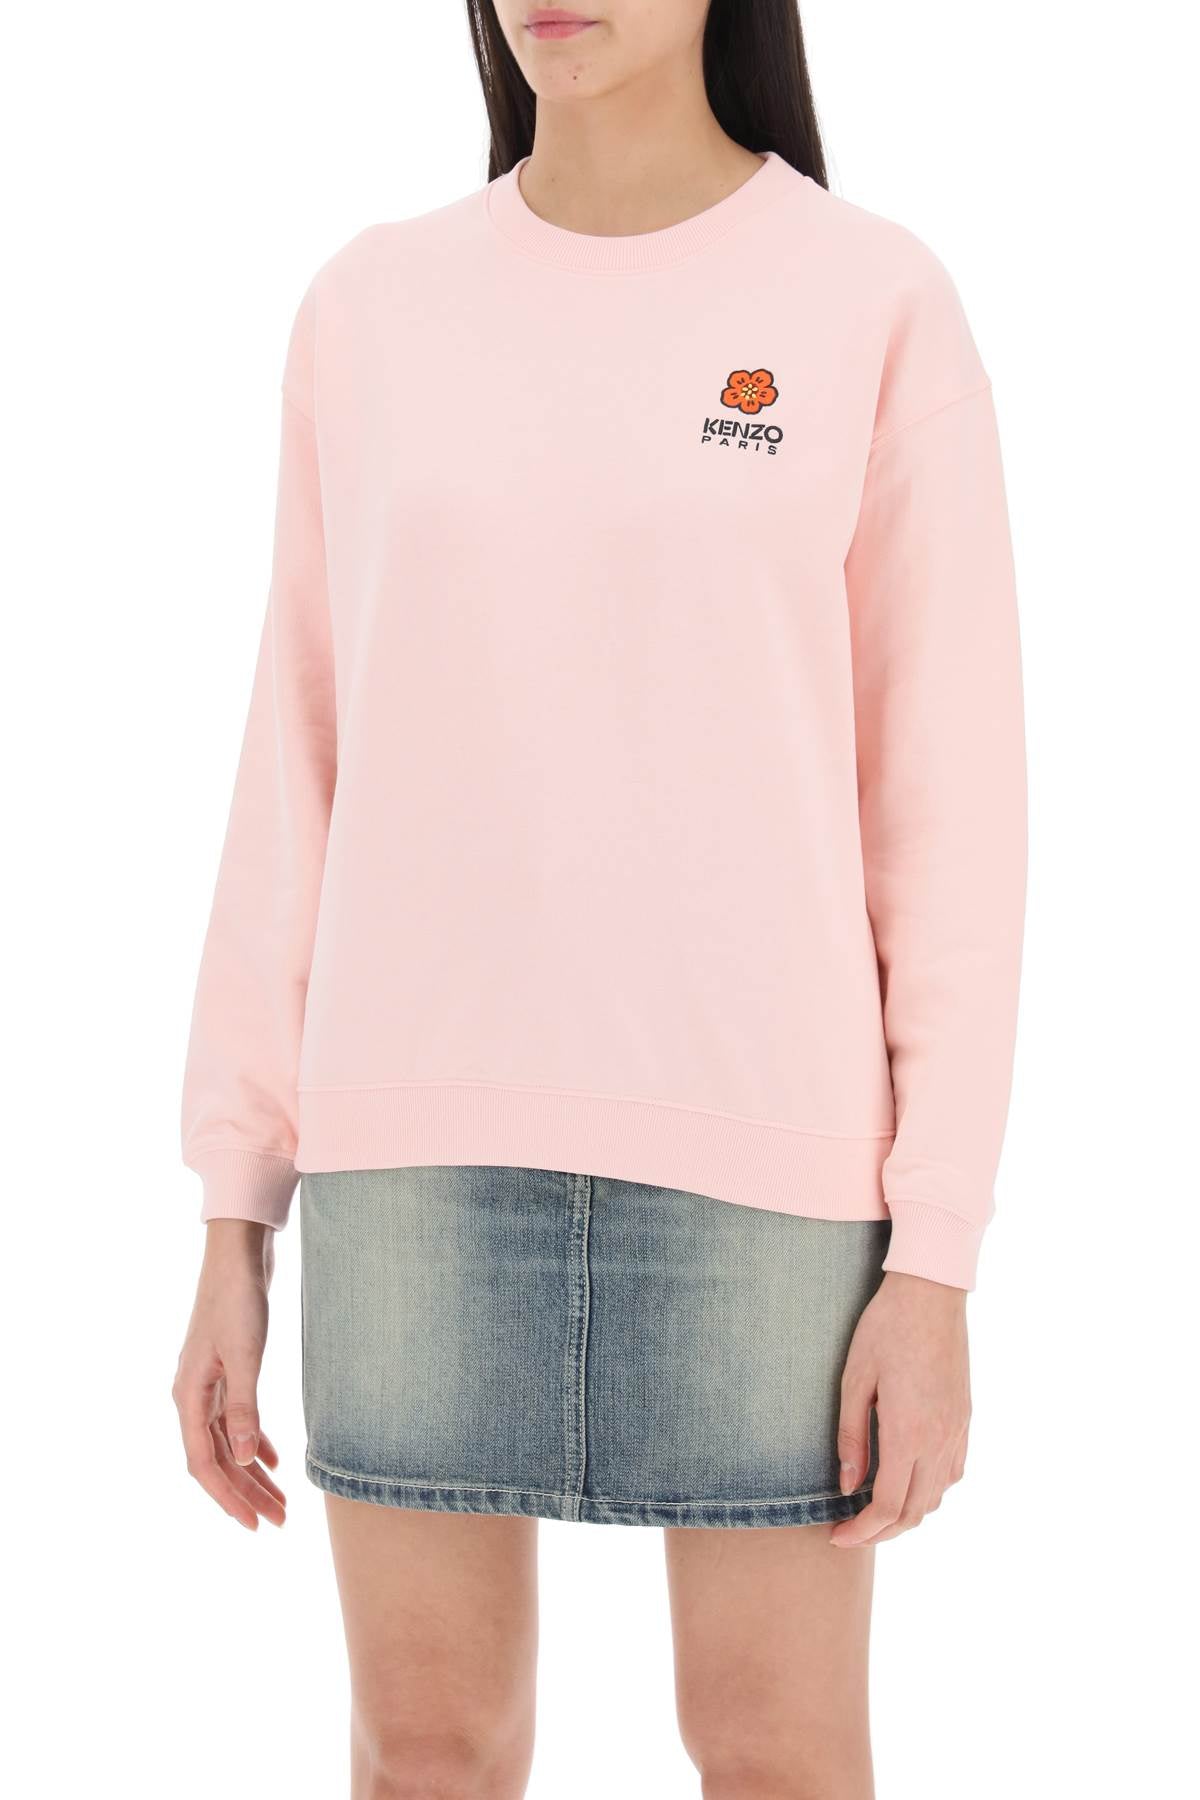 Kenzo crew-neck sweatshirt with embroidery-3